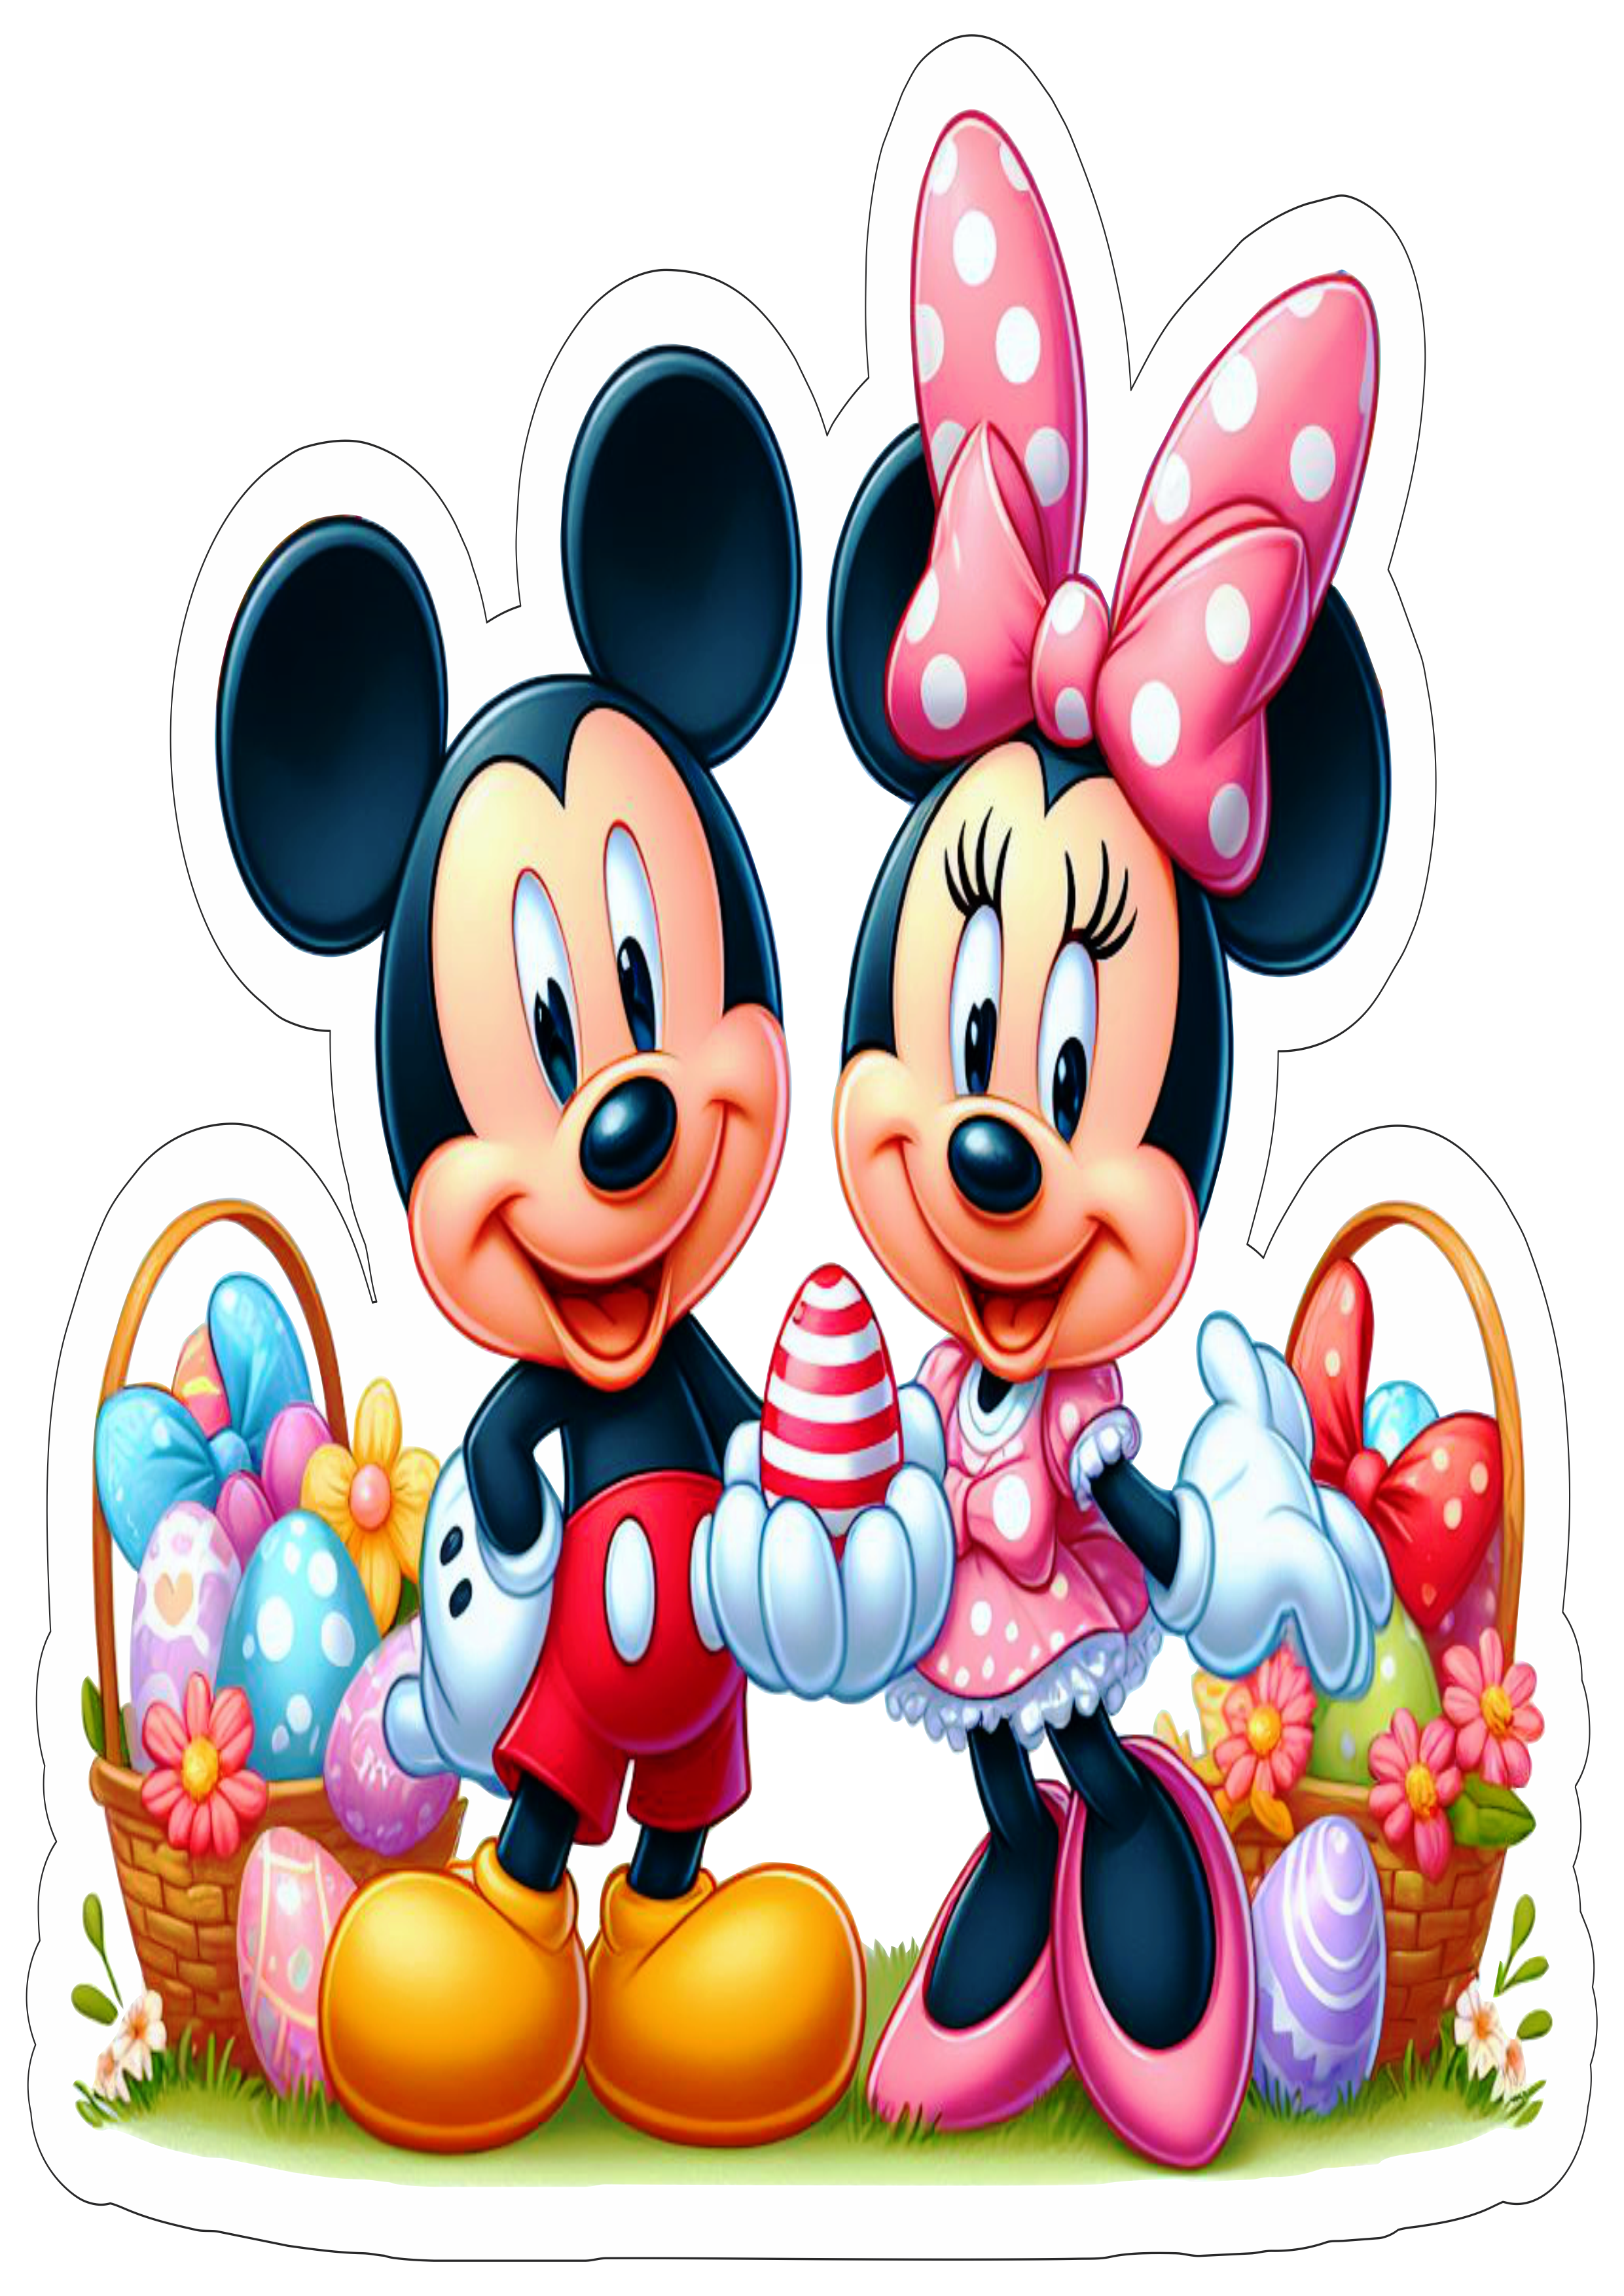 Mickey e Minnie especial de páscoa fundo transparente com contorno ilustração artes gráficas desenho infantil png